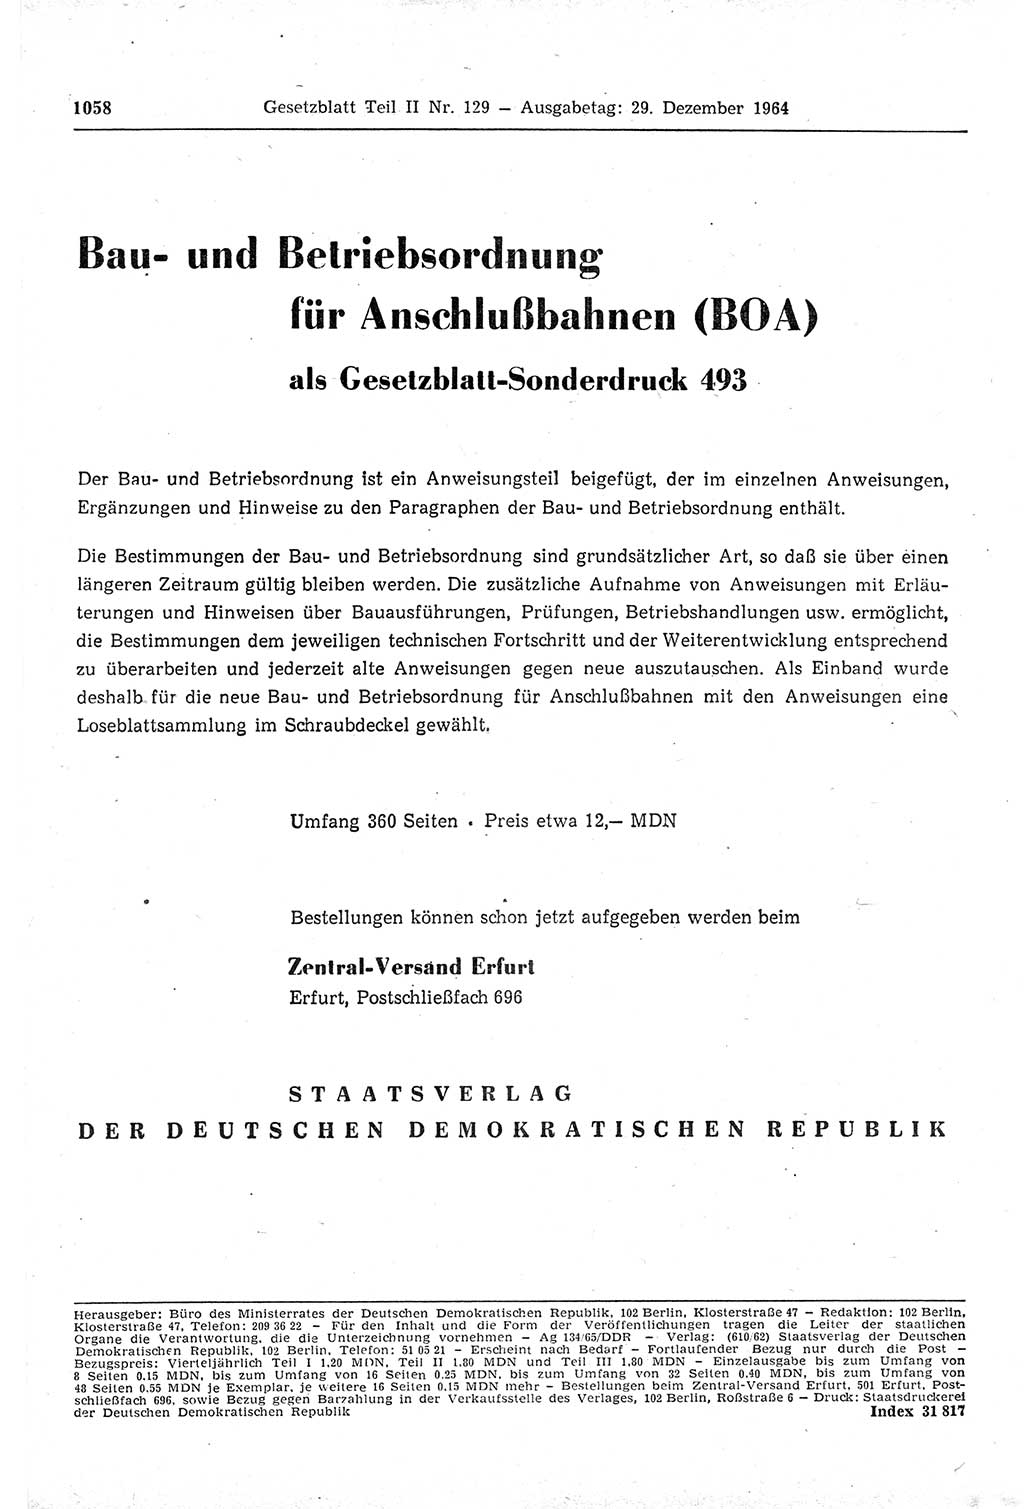 Gesetzblatt (GBl.) der Deutschen Demokratischen Republik (DDR) Teil ⅠⅠ 1964, Seite 1058 (GBl. DDR ⅠⅠ 1964, S. 1058)